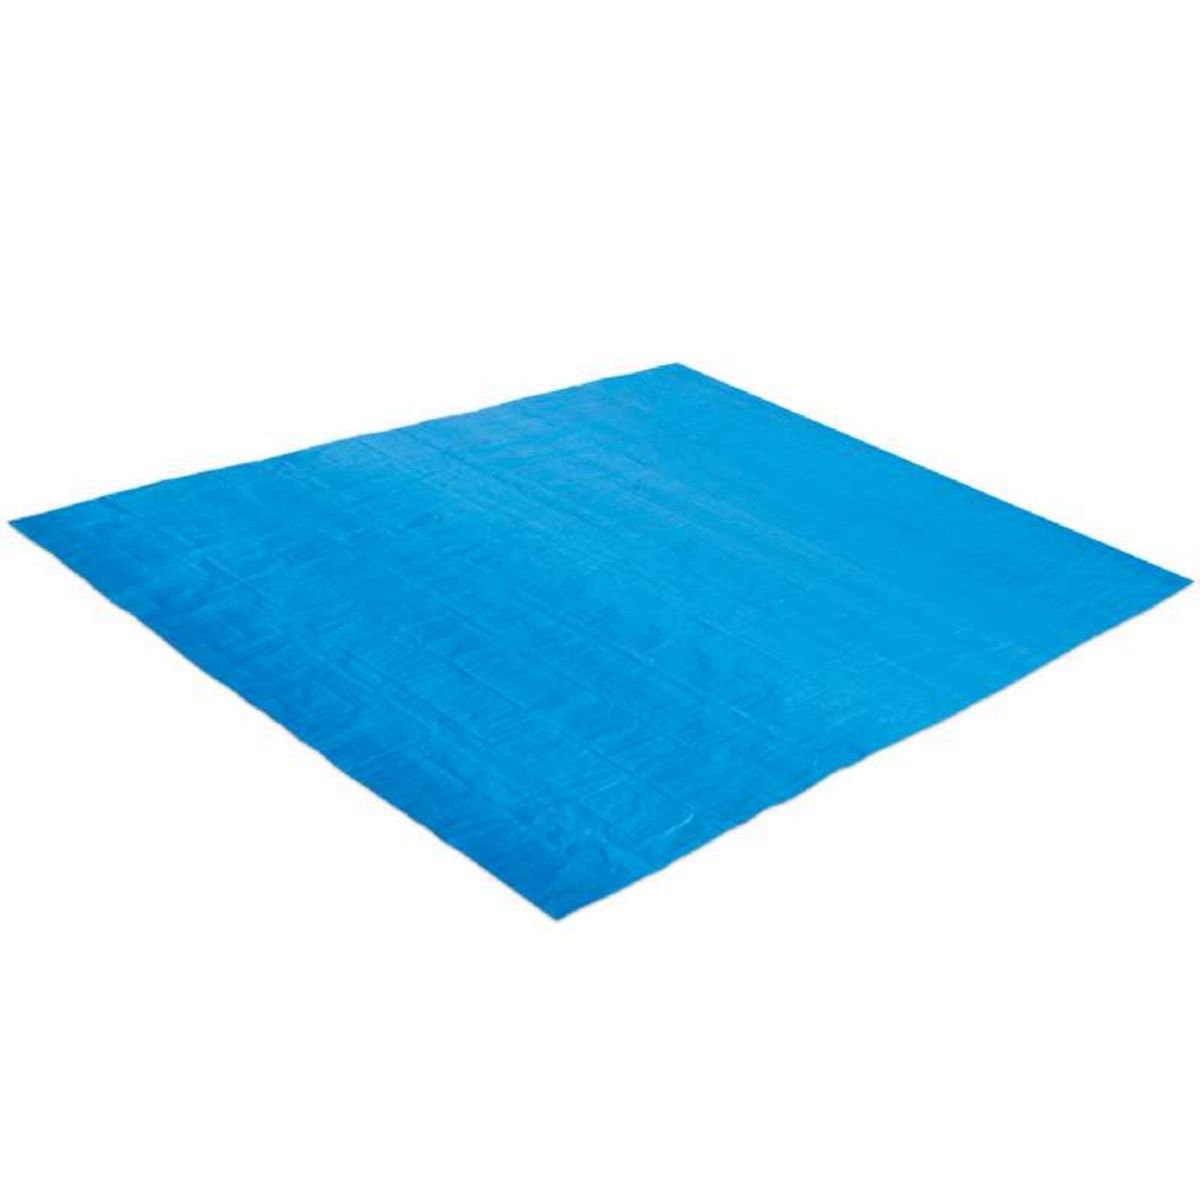  Tapis de sol bleu pour piscine Summer Waves 3,91 x 3,91 m pour piscine Ø 3,66 m